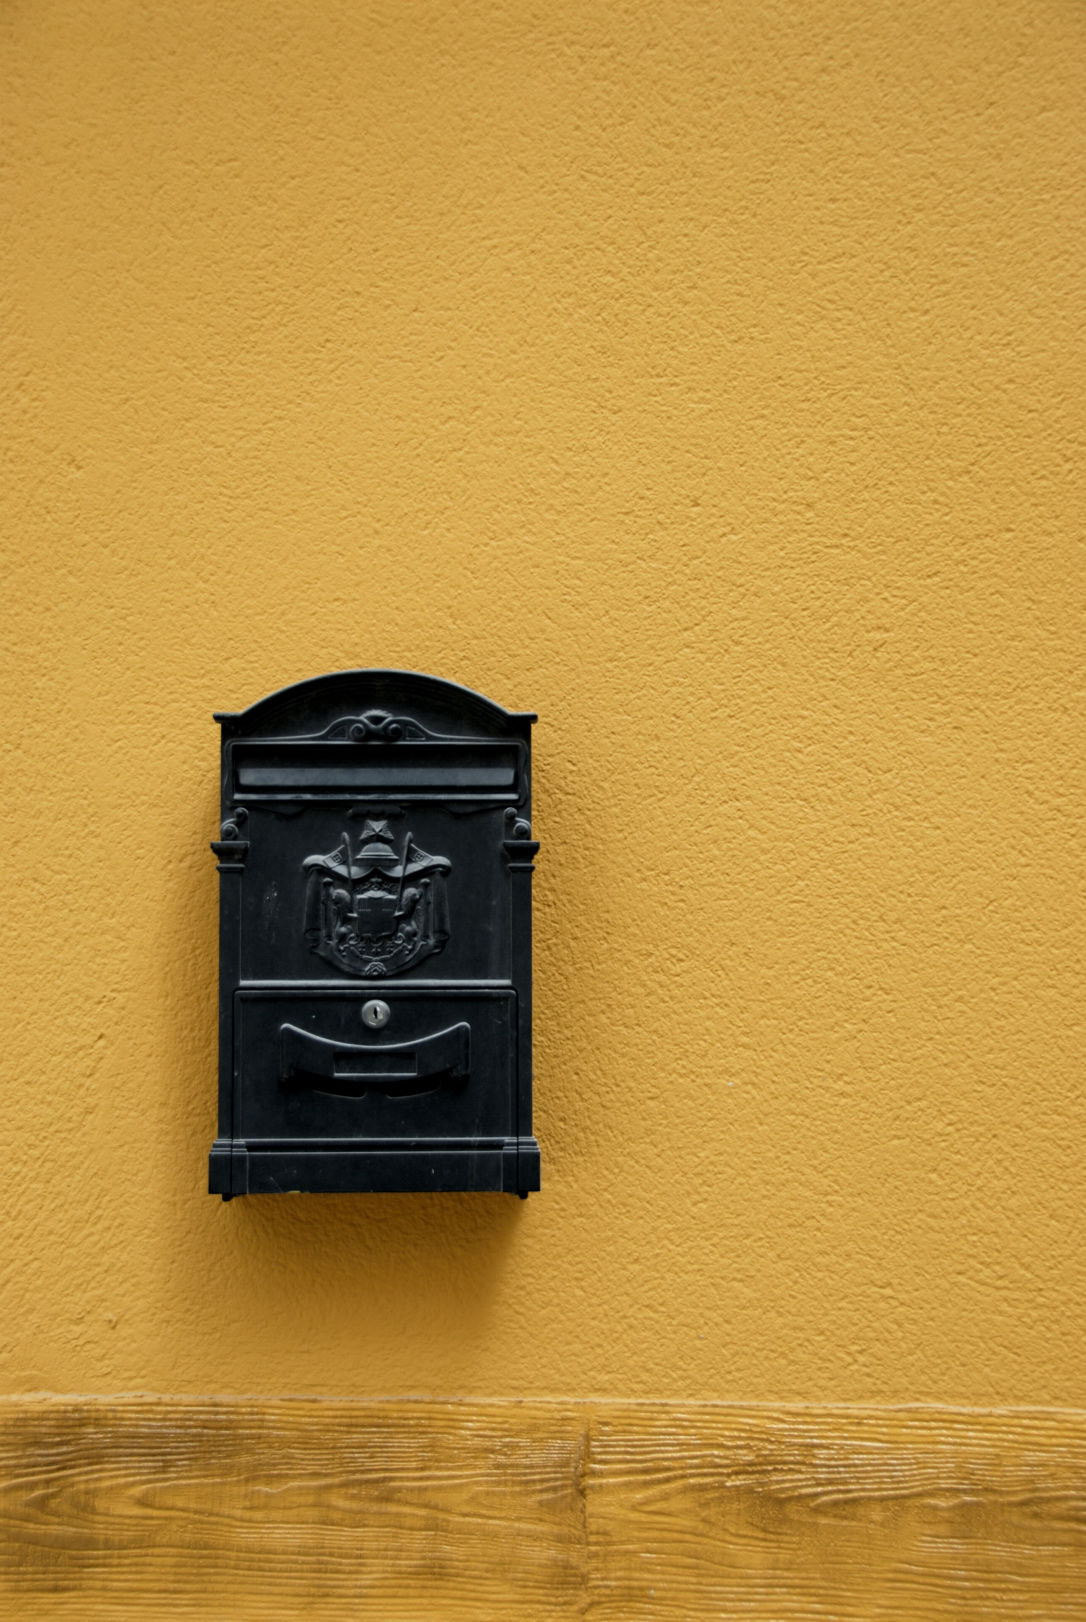 boite aux lettre noire sur mur jaune - Alicante - Espagne